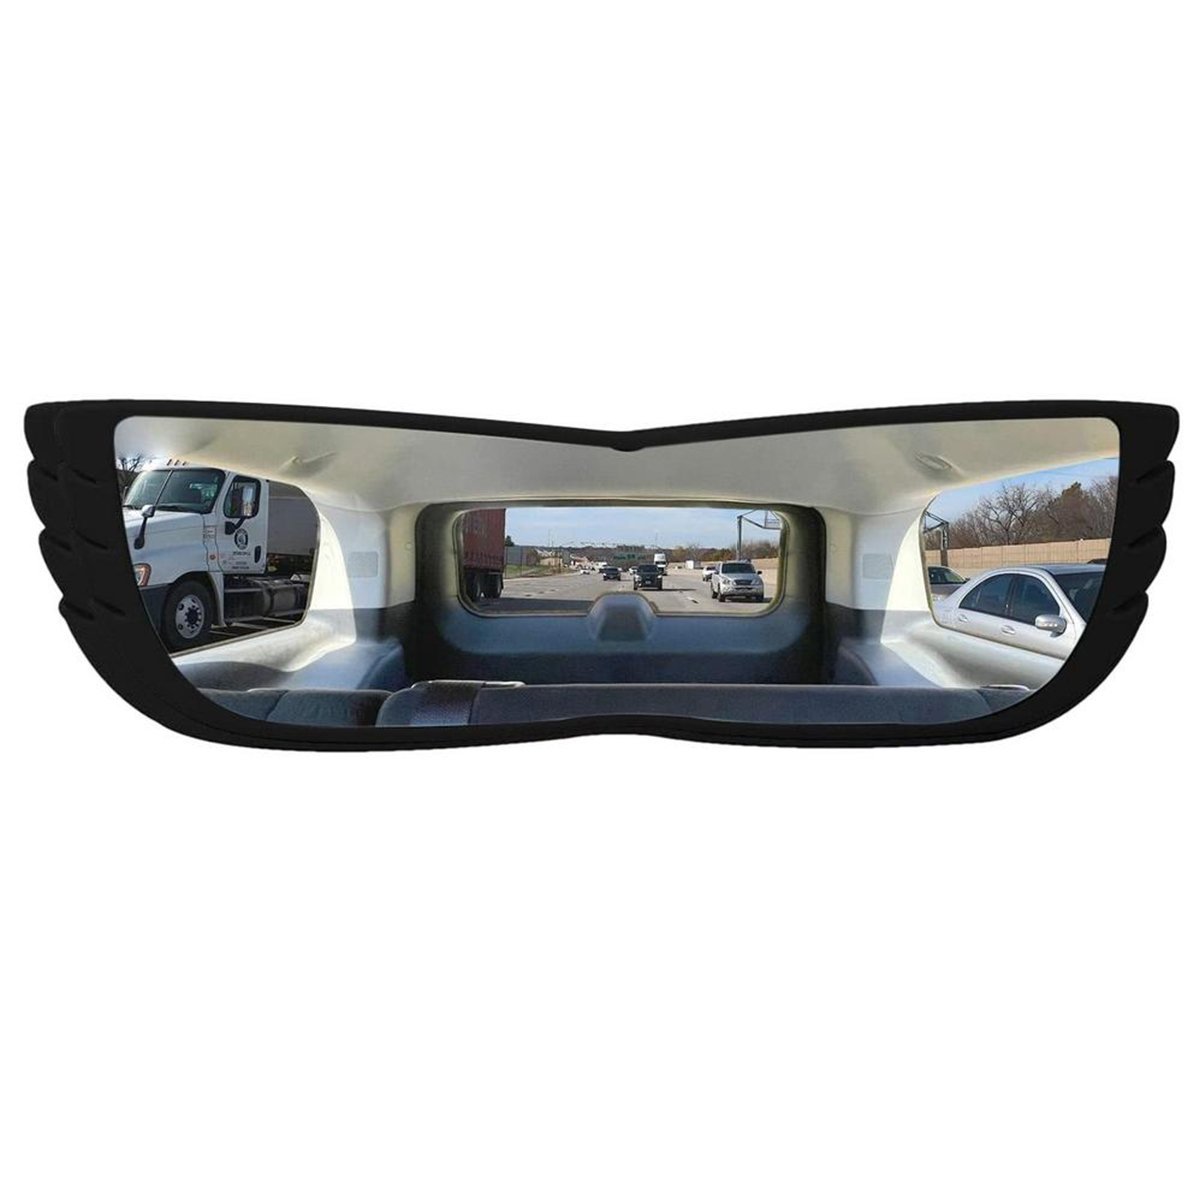 Espelho Retrovisor 160 Graus Carro Automotivo Caminhao Visao Ampla Panoramica Alta Visibilidade Prot - 4